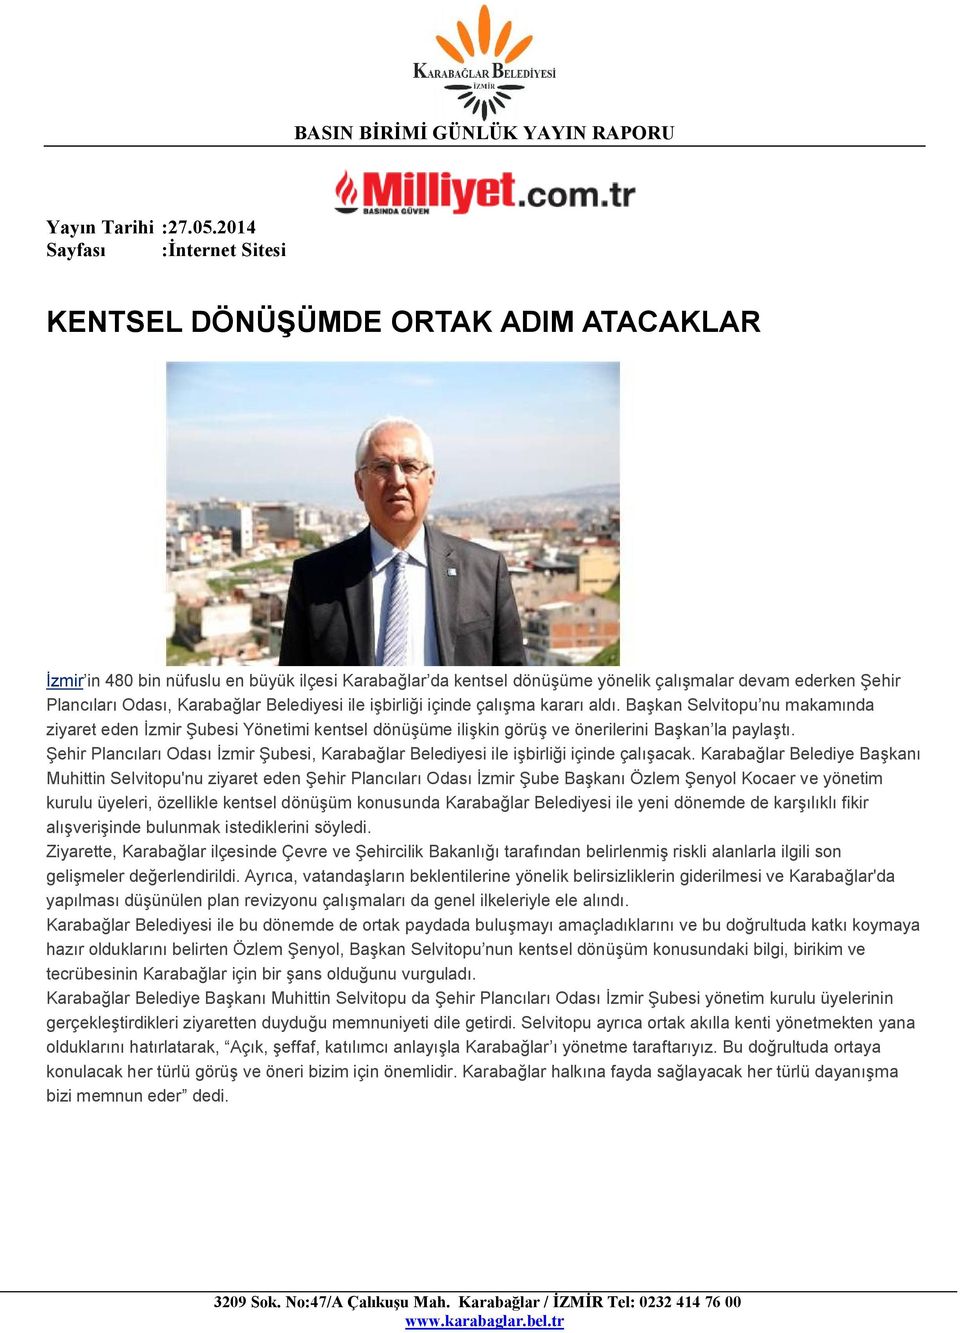 Şehir Plancıları Odası İzmir Şubesi, Karabağlar Belediyesi ile işbirliği içinde çalışacak.